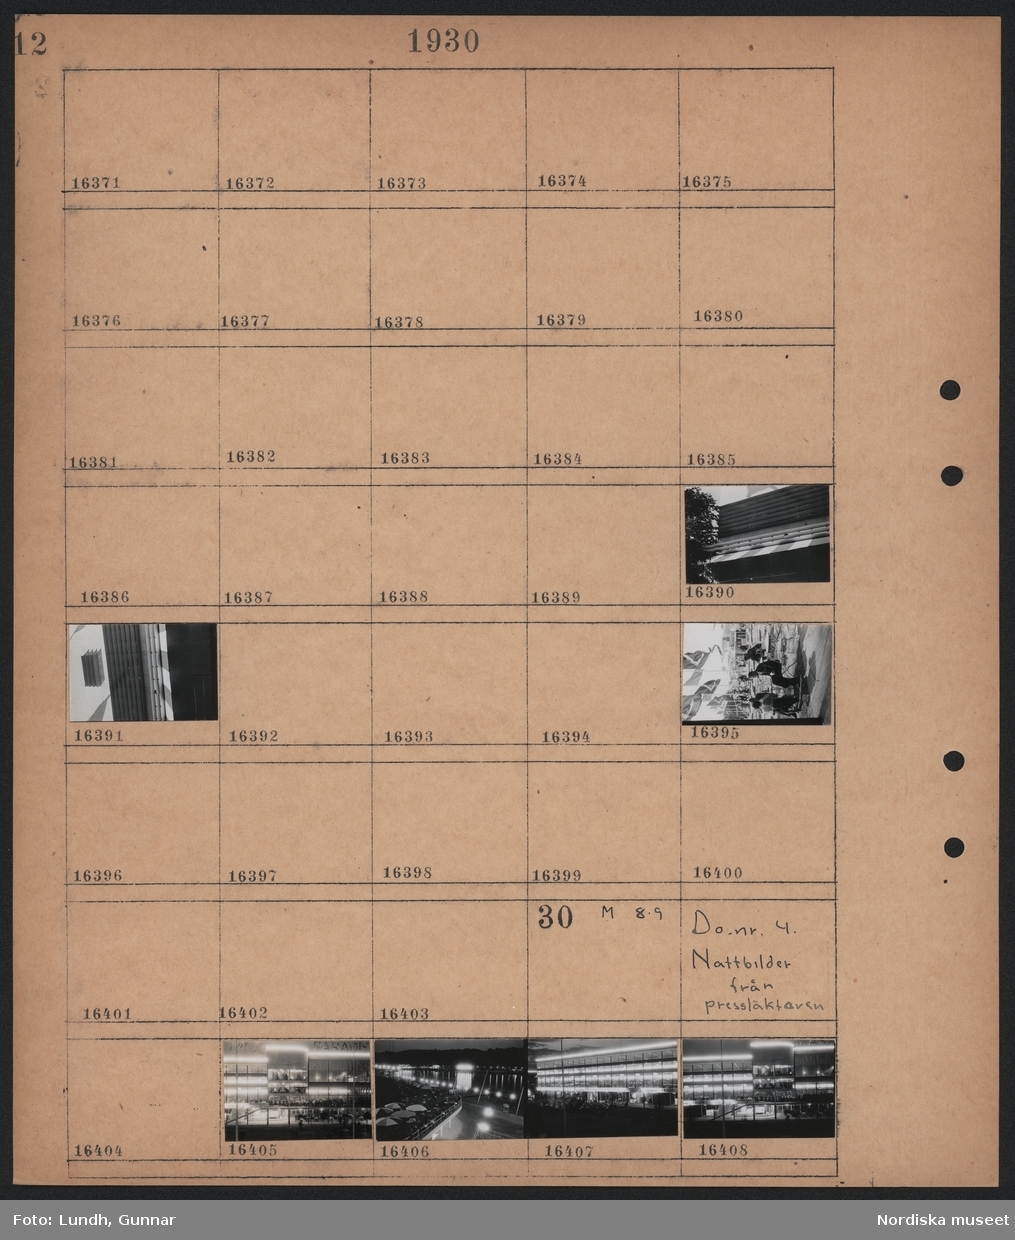 Motiv: Stockholmsutställningen 1930;
Detaljer av byggnad, människor på en uteservering.

Motiv: Stockholmsutställningen 1930, Nattbilder från pressläktaren;
Nattbild av byggnad på utställningen, nattbild med vy över utställningen.